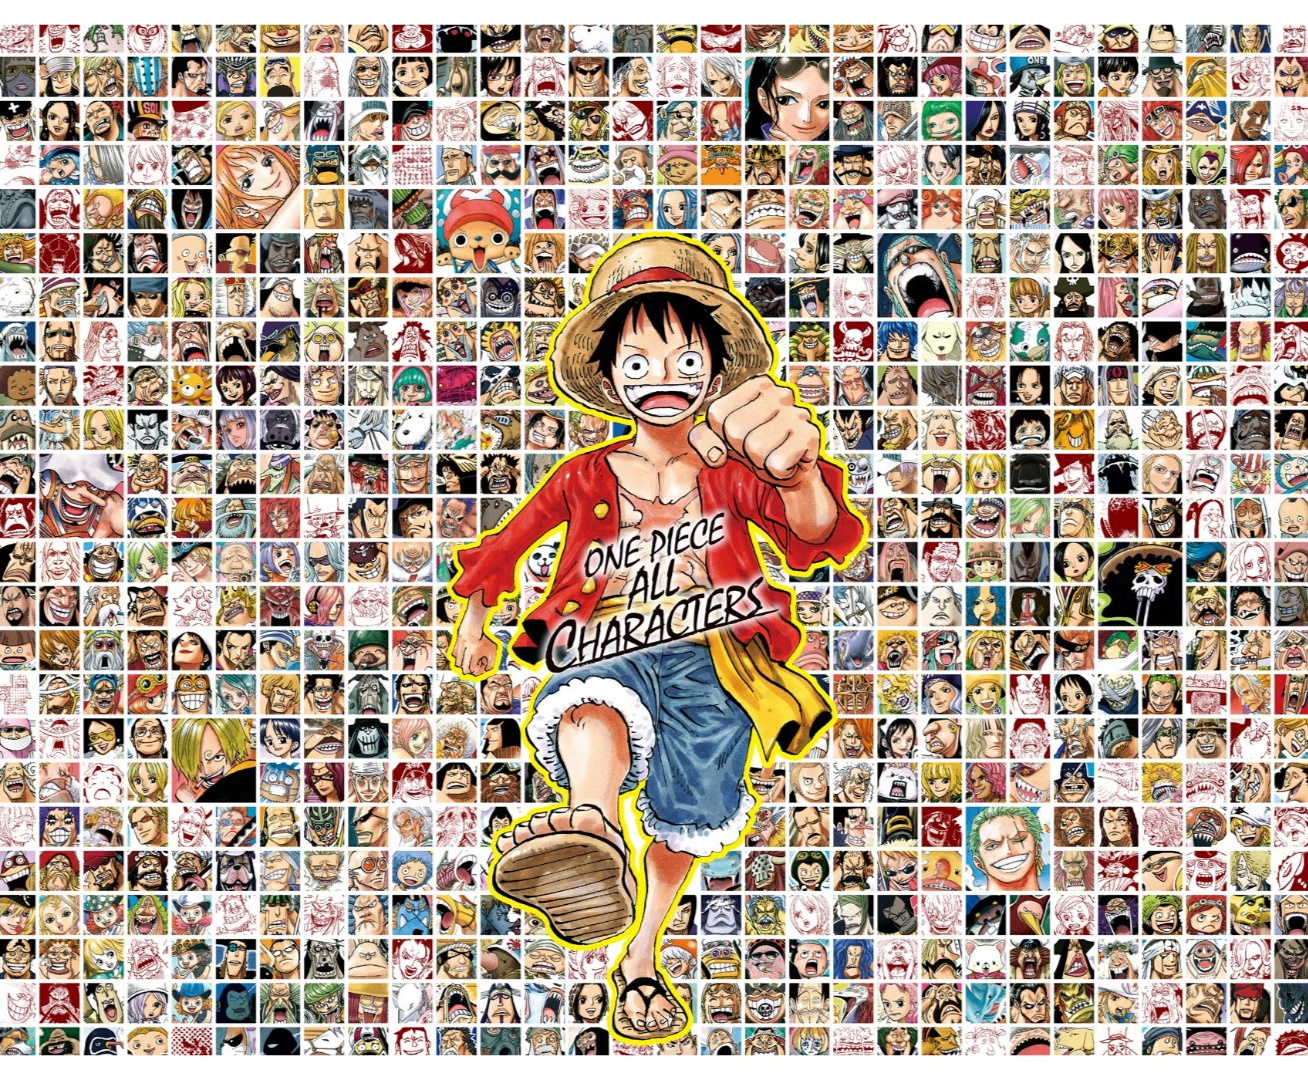 One Piece ワンピース の登場人物 キャラクターのプロフィールまとめ 3 5 Renote リノート